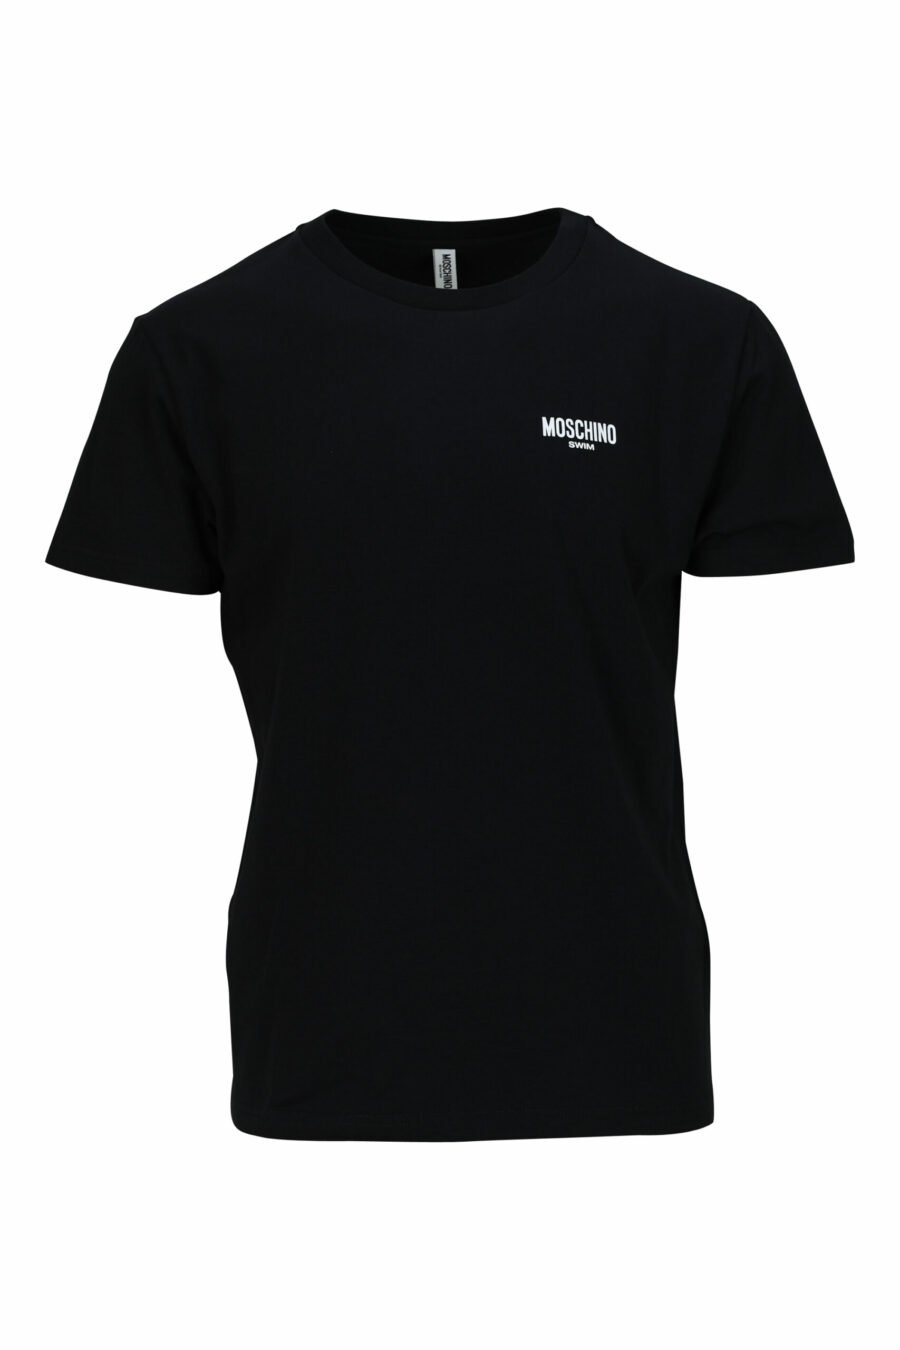 T-shirt noir avec minilogue "nage" - 667113673530 échelonné